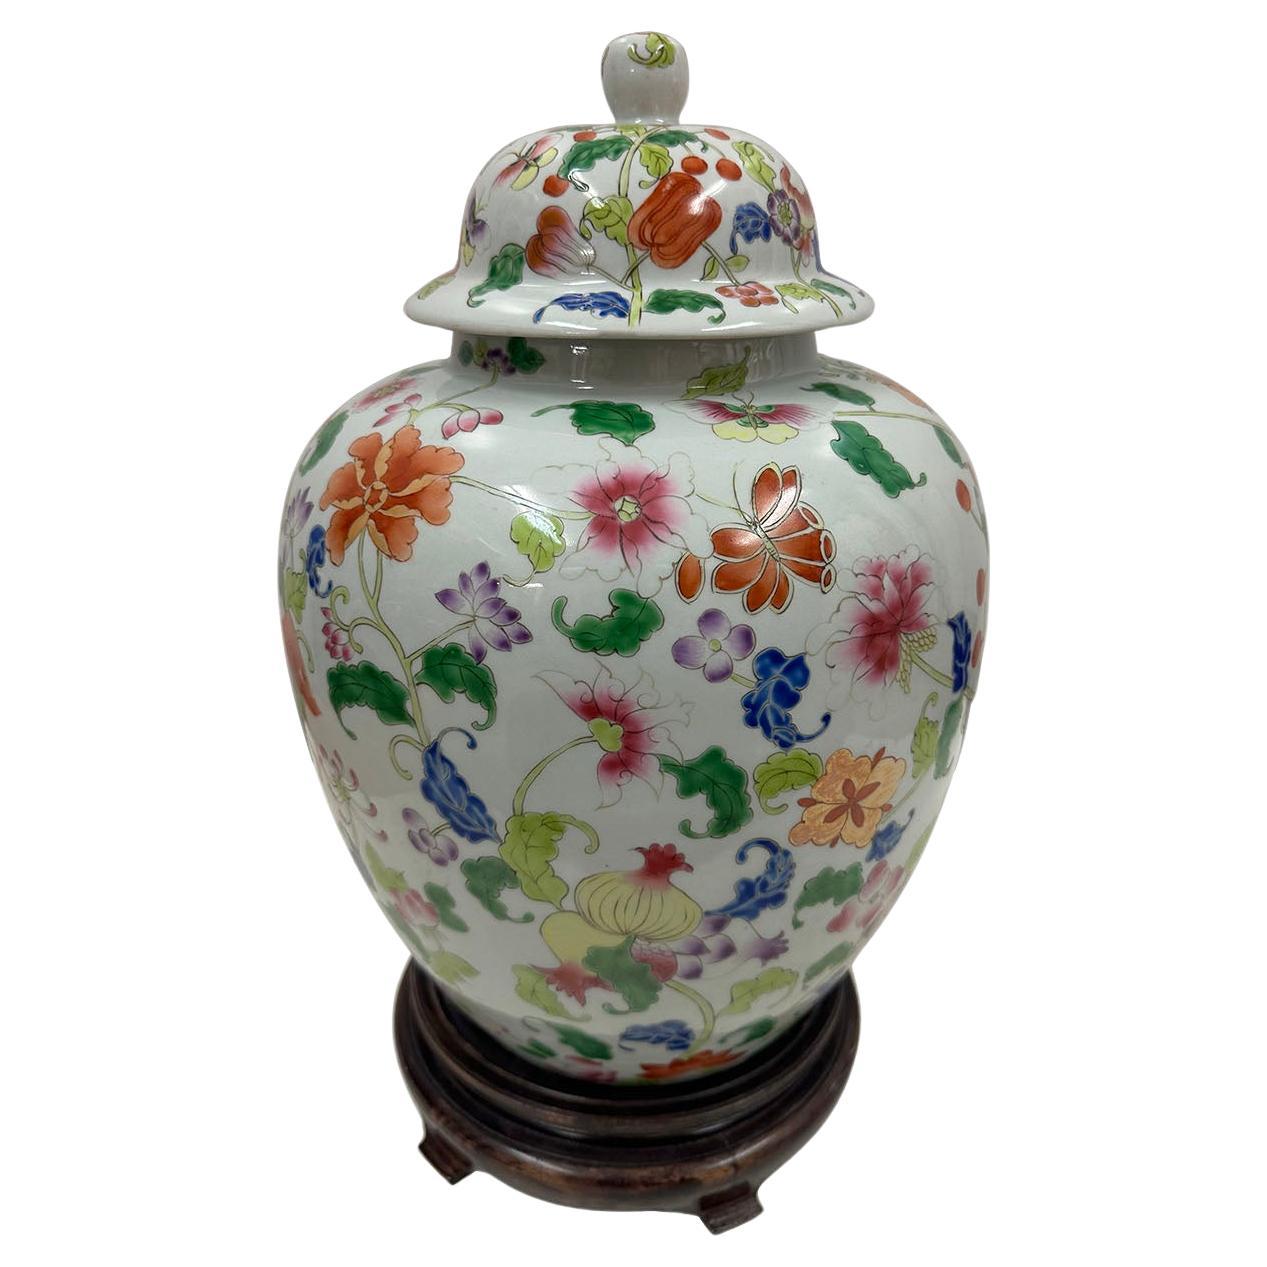 Vasetto di zenzero cinese d'epoca in porcellana dipinta a mano con motivi floreali